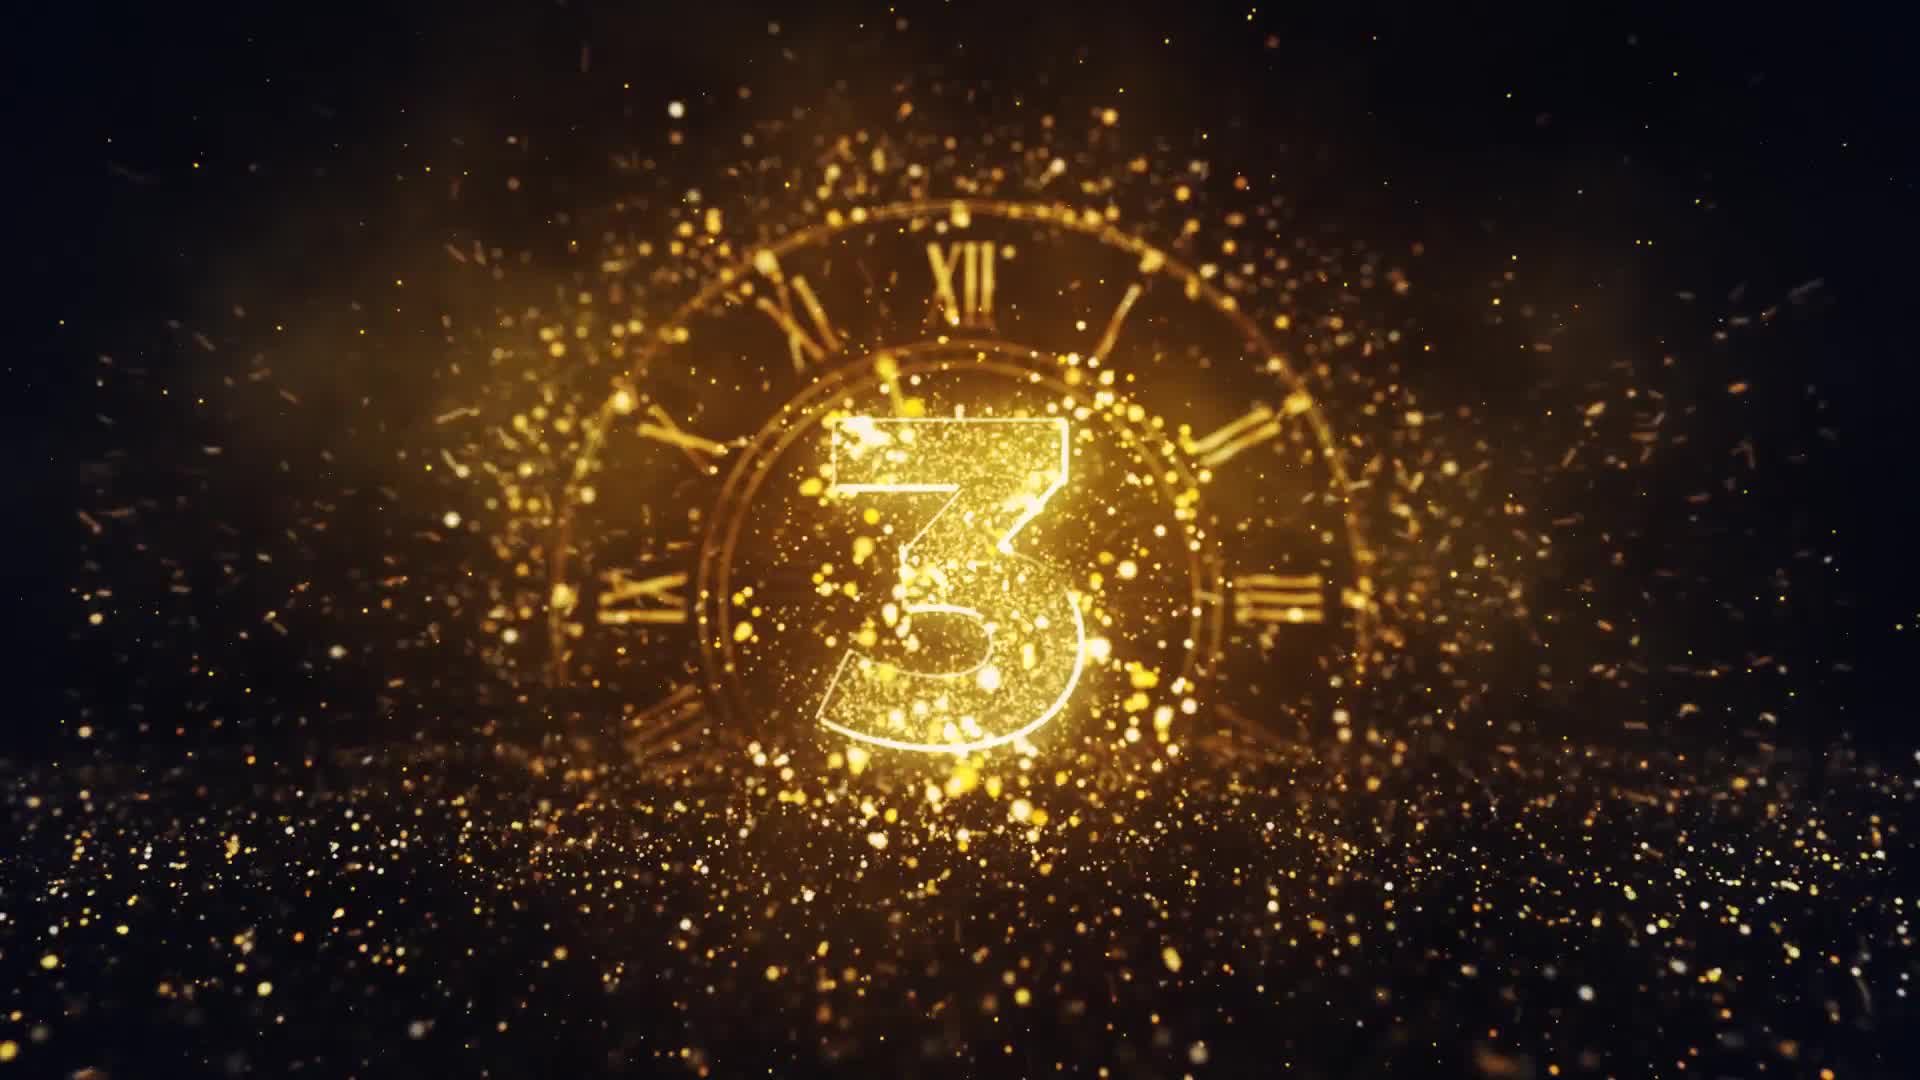 new years countdown clock 2021